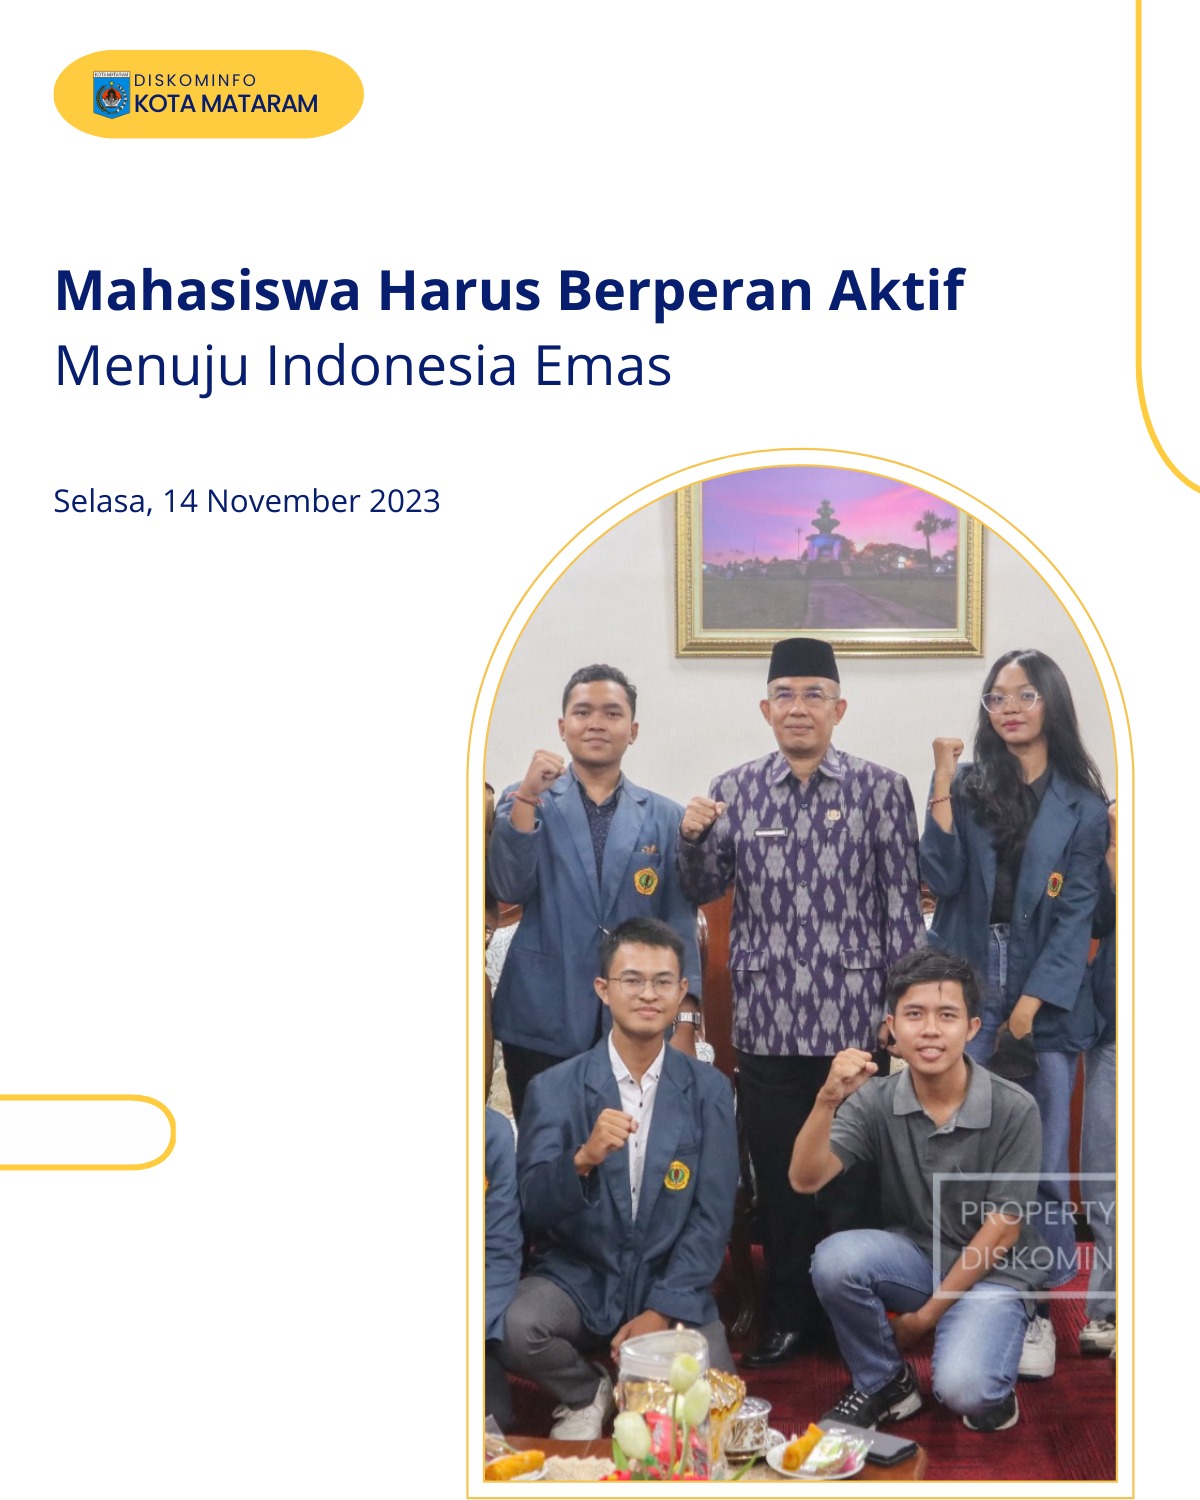 Mahasiswa Harus Berperan Aktif Menuju Indonesia Emas